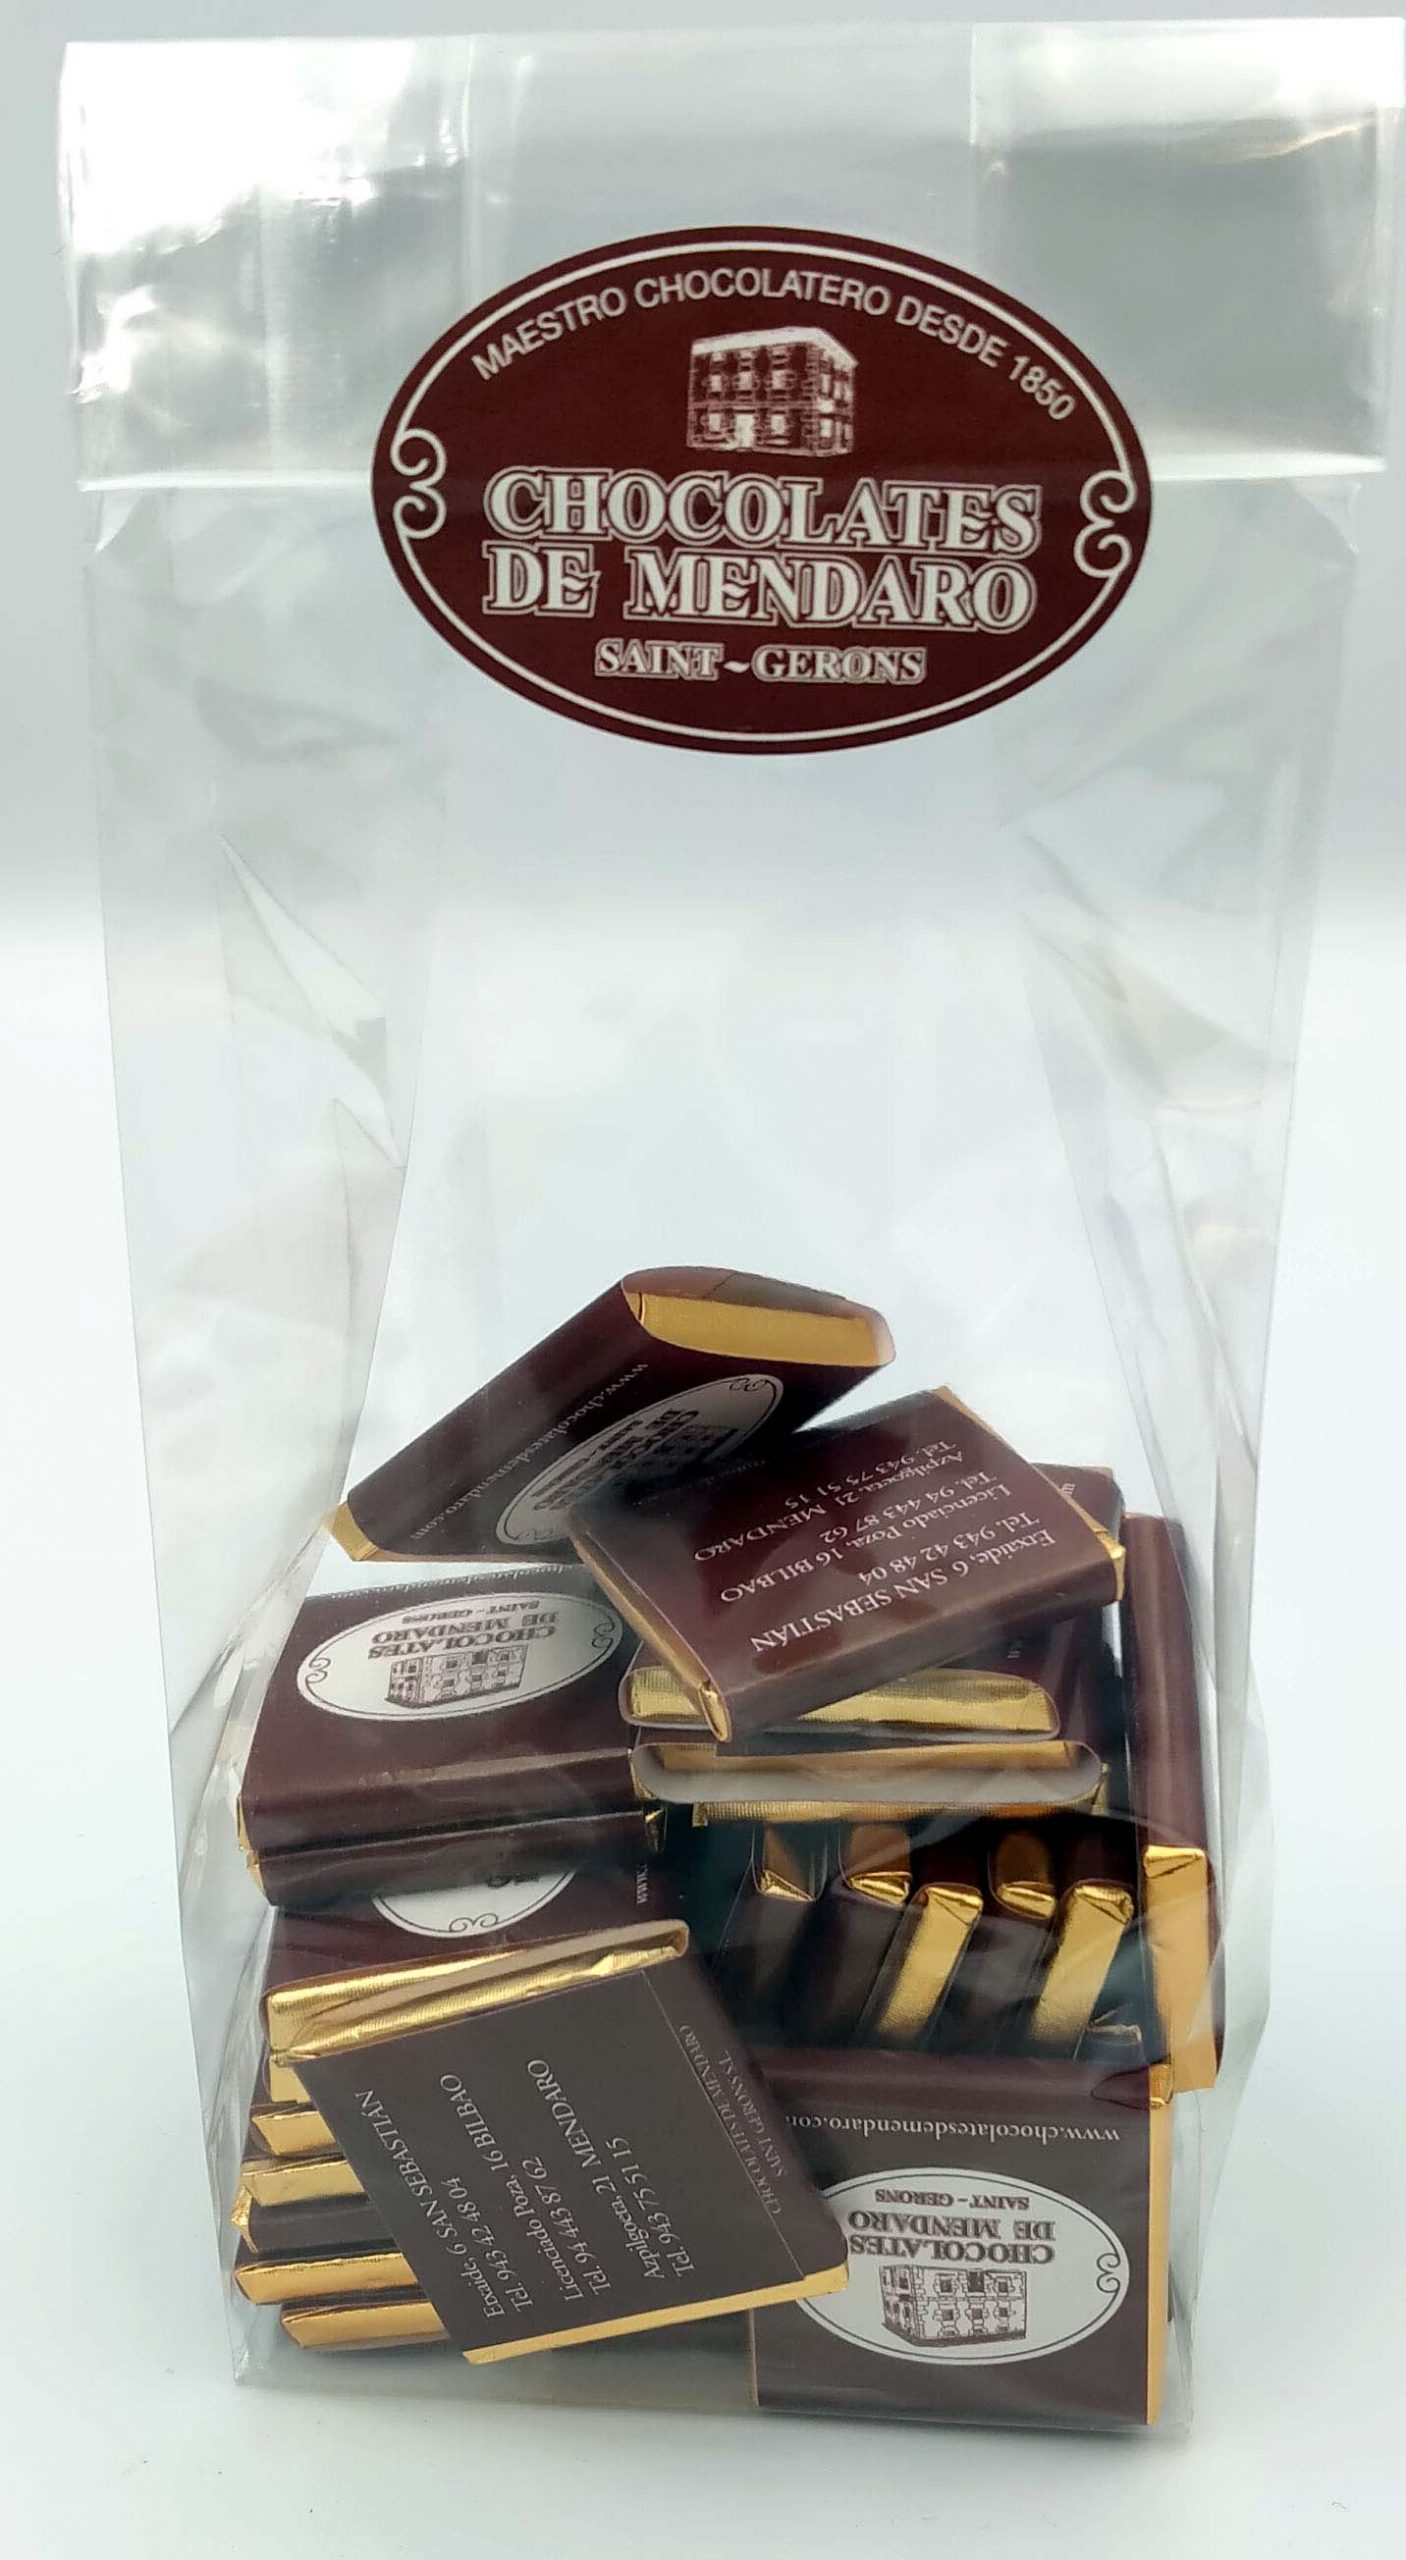 Puros de chocolate - Chocolates de Mendaro